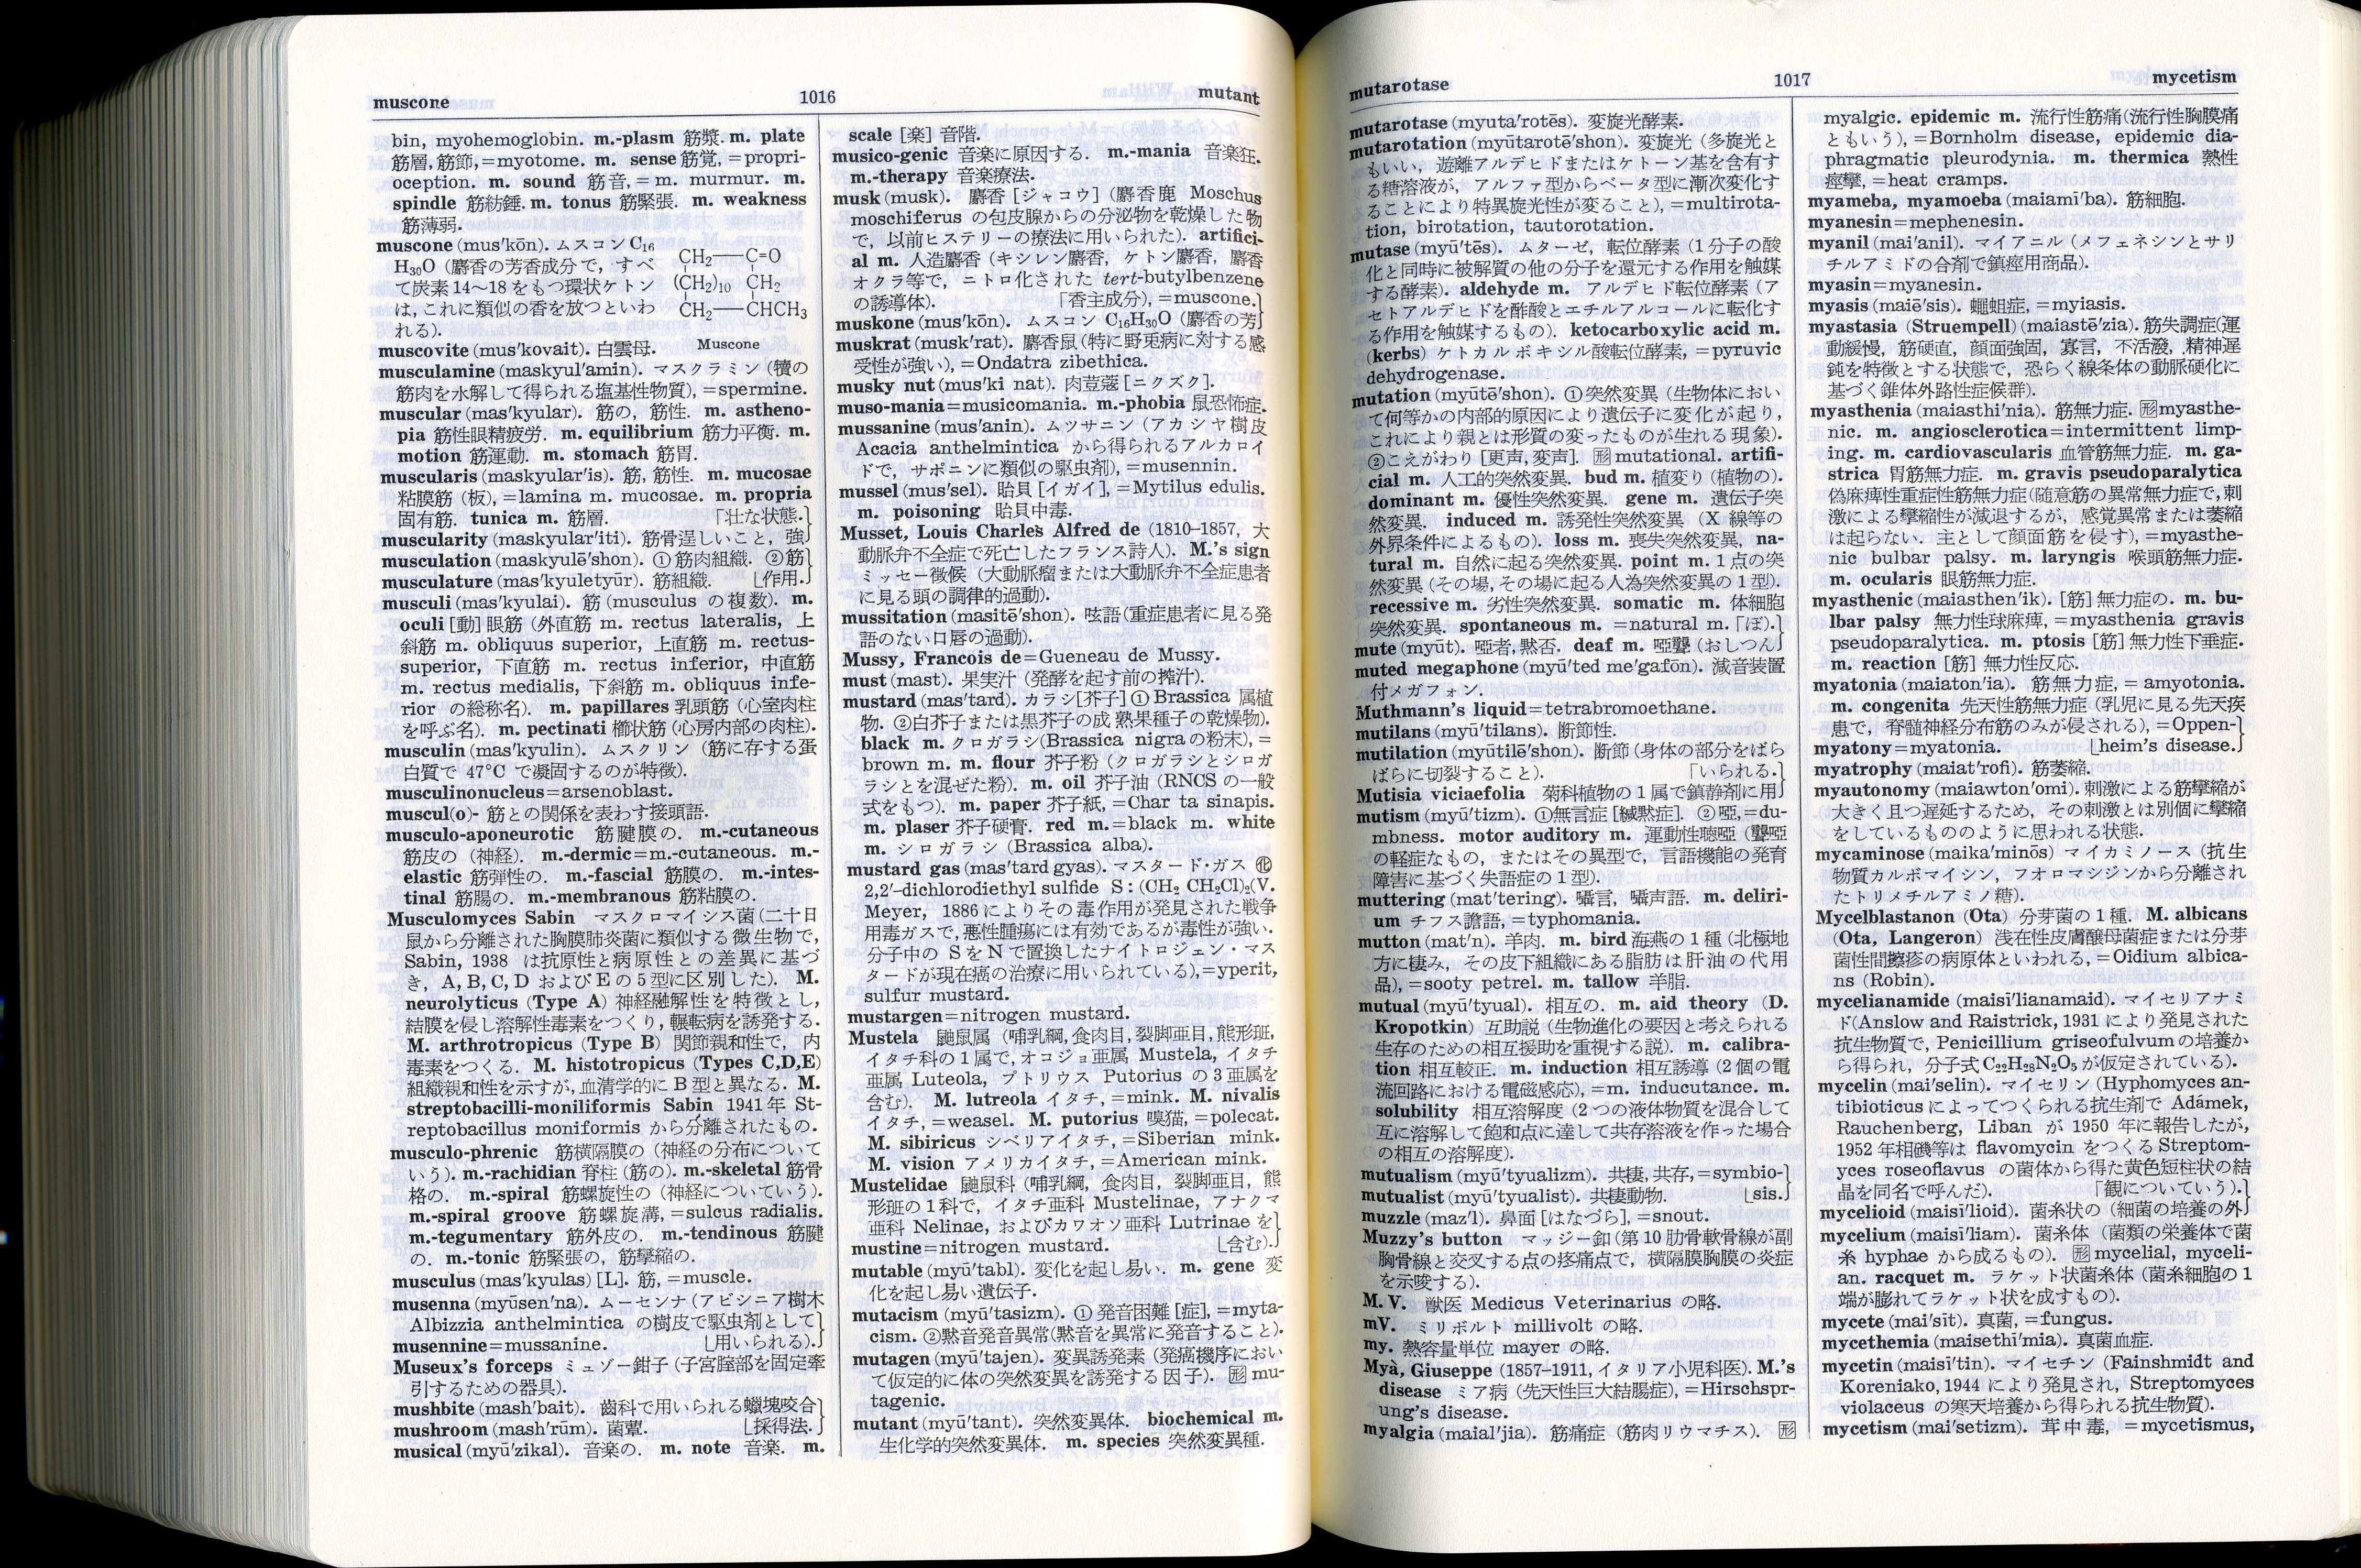 太郎の辞典 縮刷 医学英和大辞典 整骨太郎のひとりごと